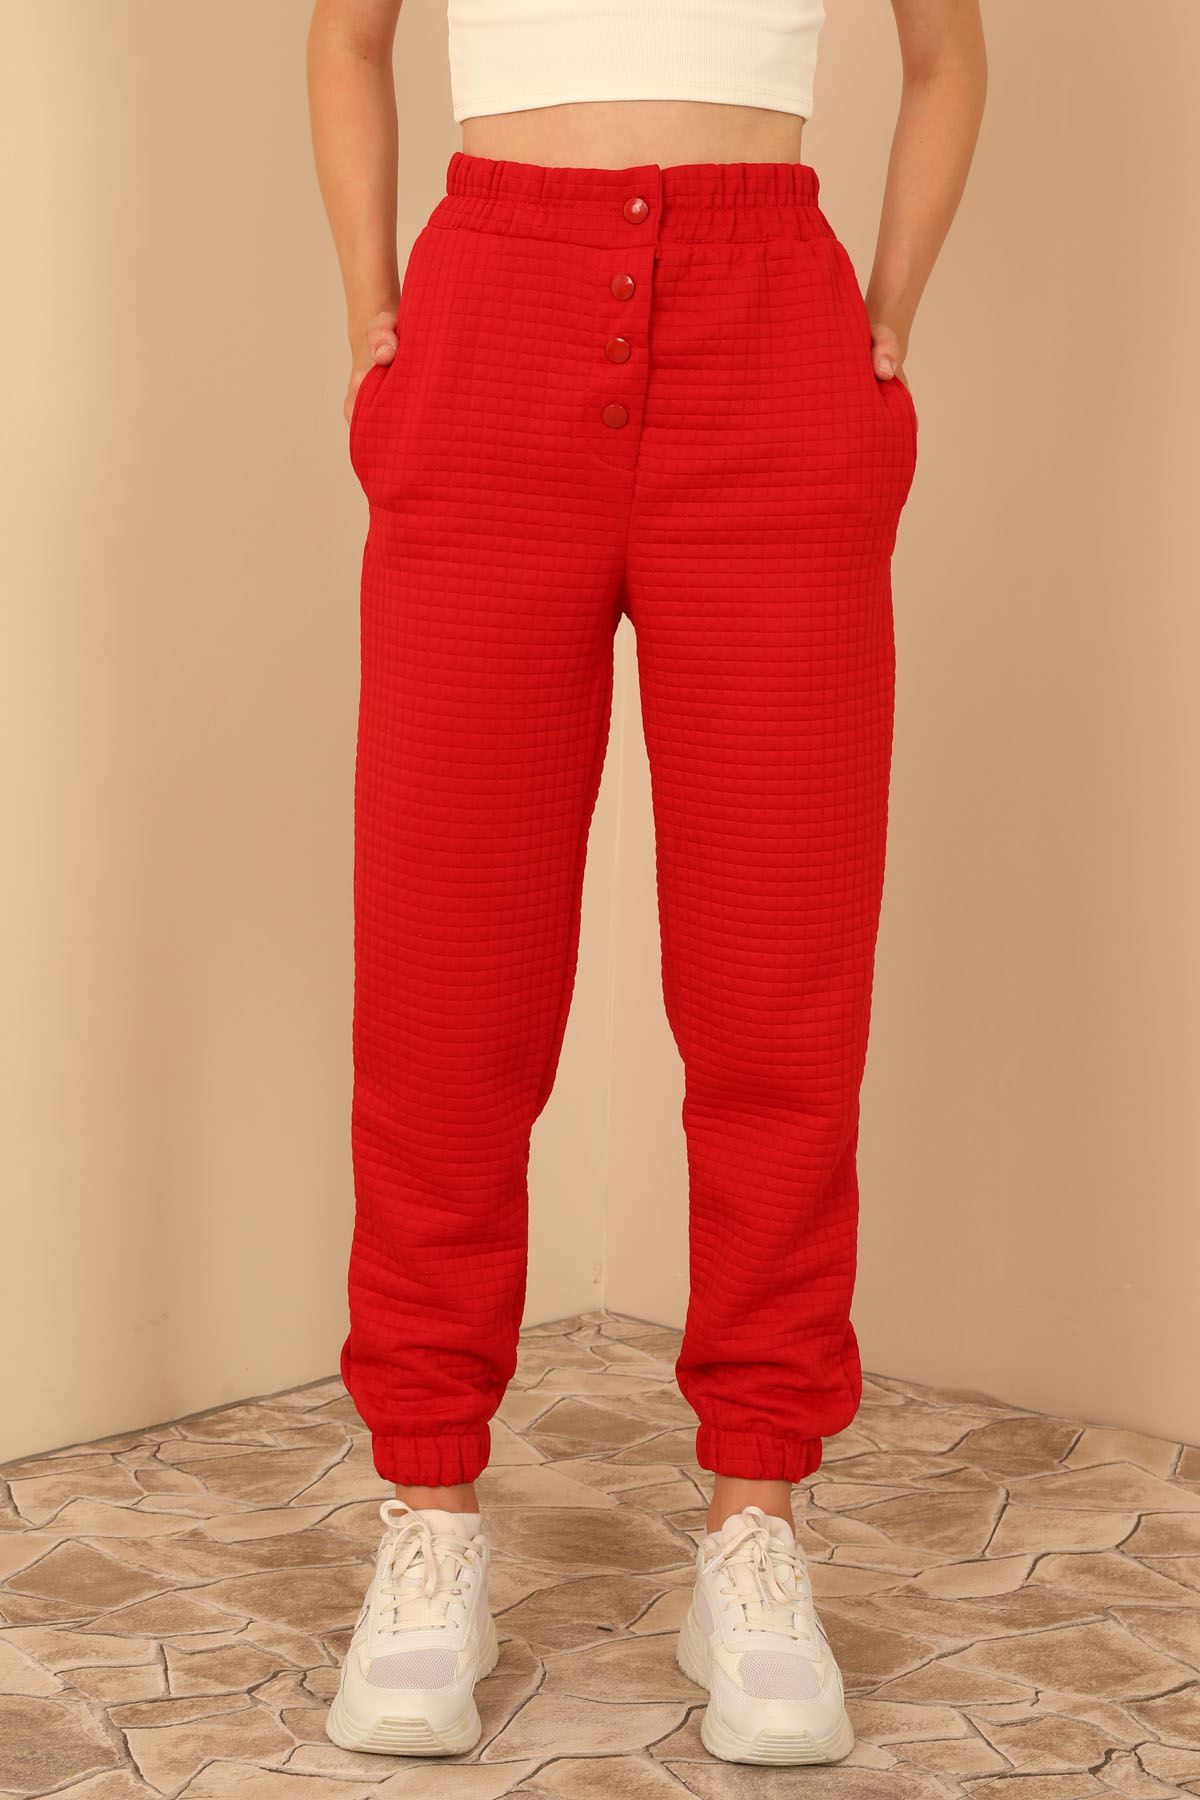 Kapitone Kumaş Bilek Boy Tam Kalıp Çıtçıt Detaylı Kadın Pantolon-Kırmızı